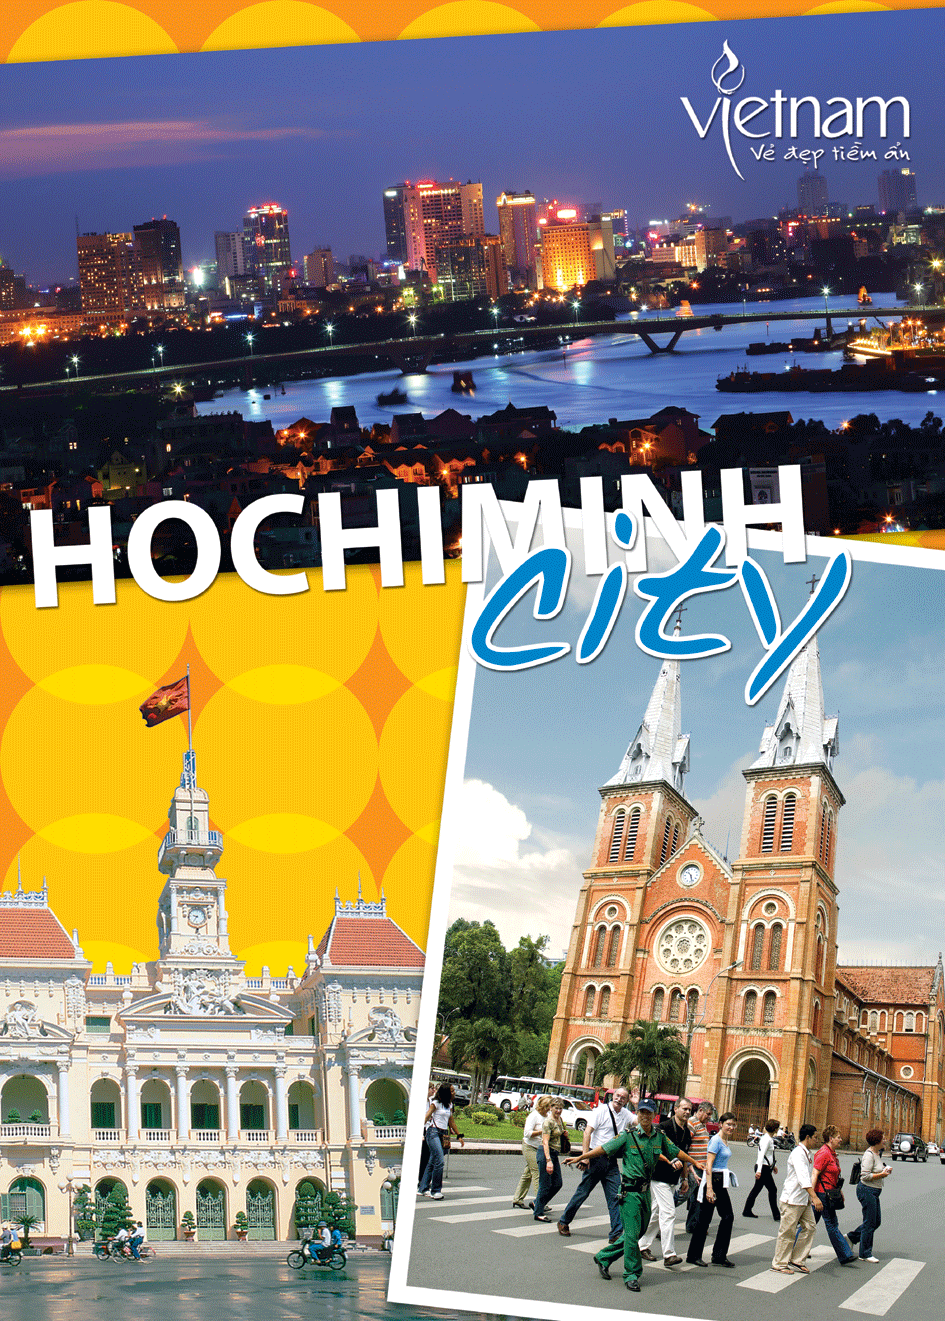 Du lịch thành phố Hồ Chí Minh tiếp tục tăng trưởng mạnh mẽ